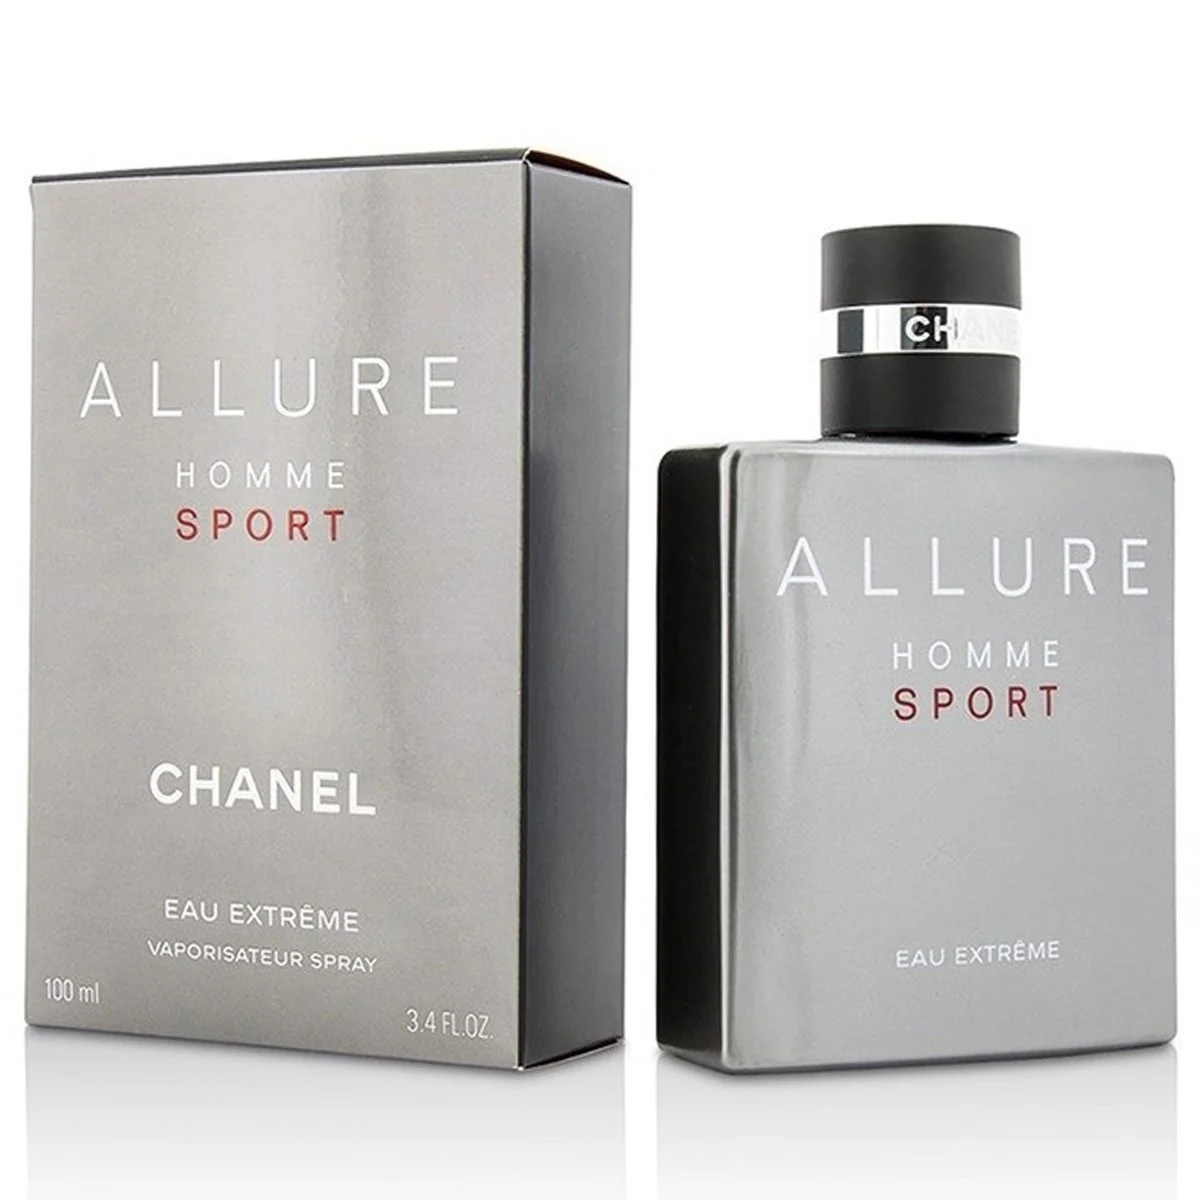 chanel-allure-homme-sport-eau-extreme-eau-de-parfum-100ml_2c4951c23728492a90ea6392fb81aeef_master